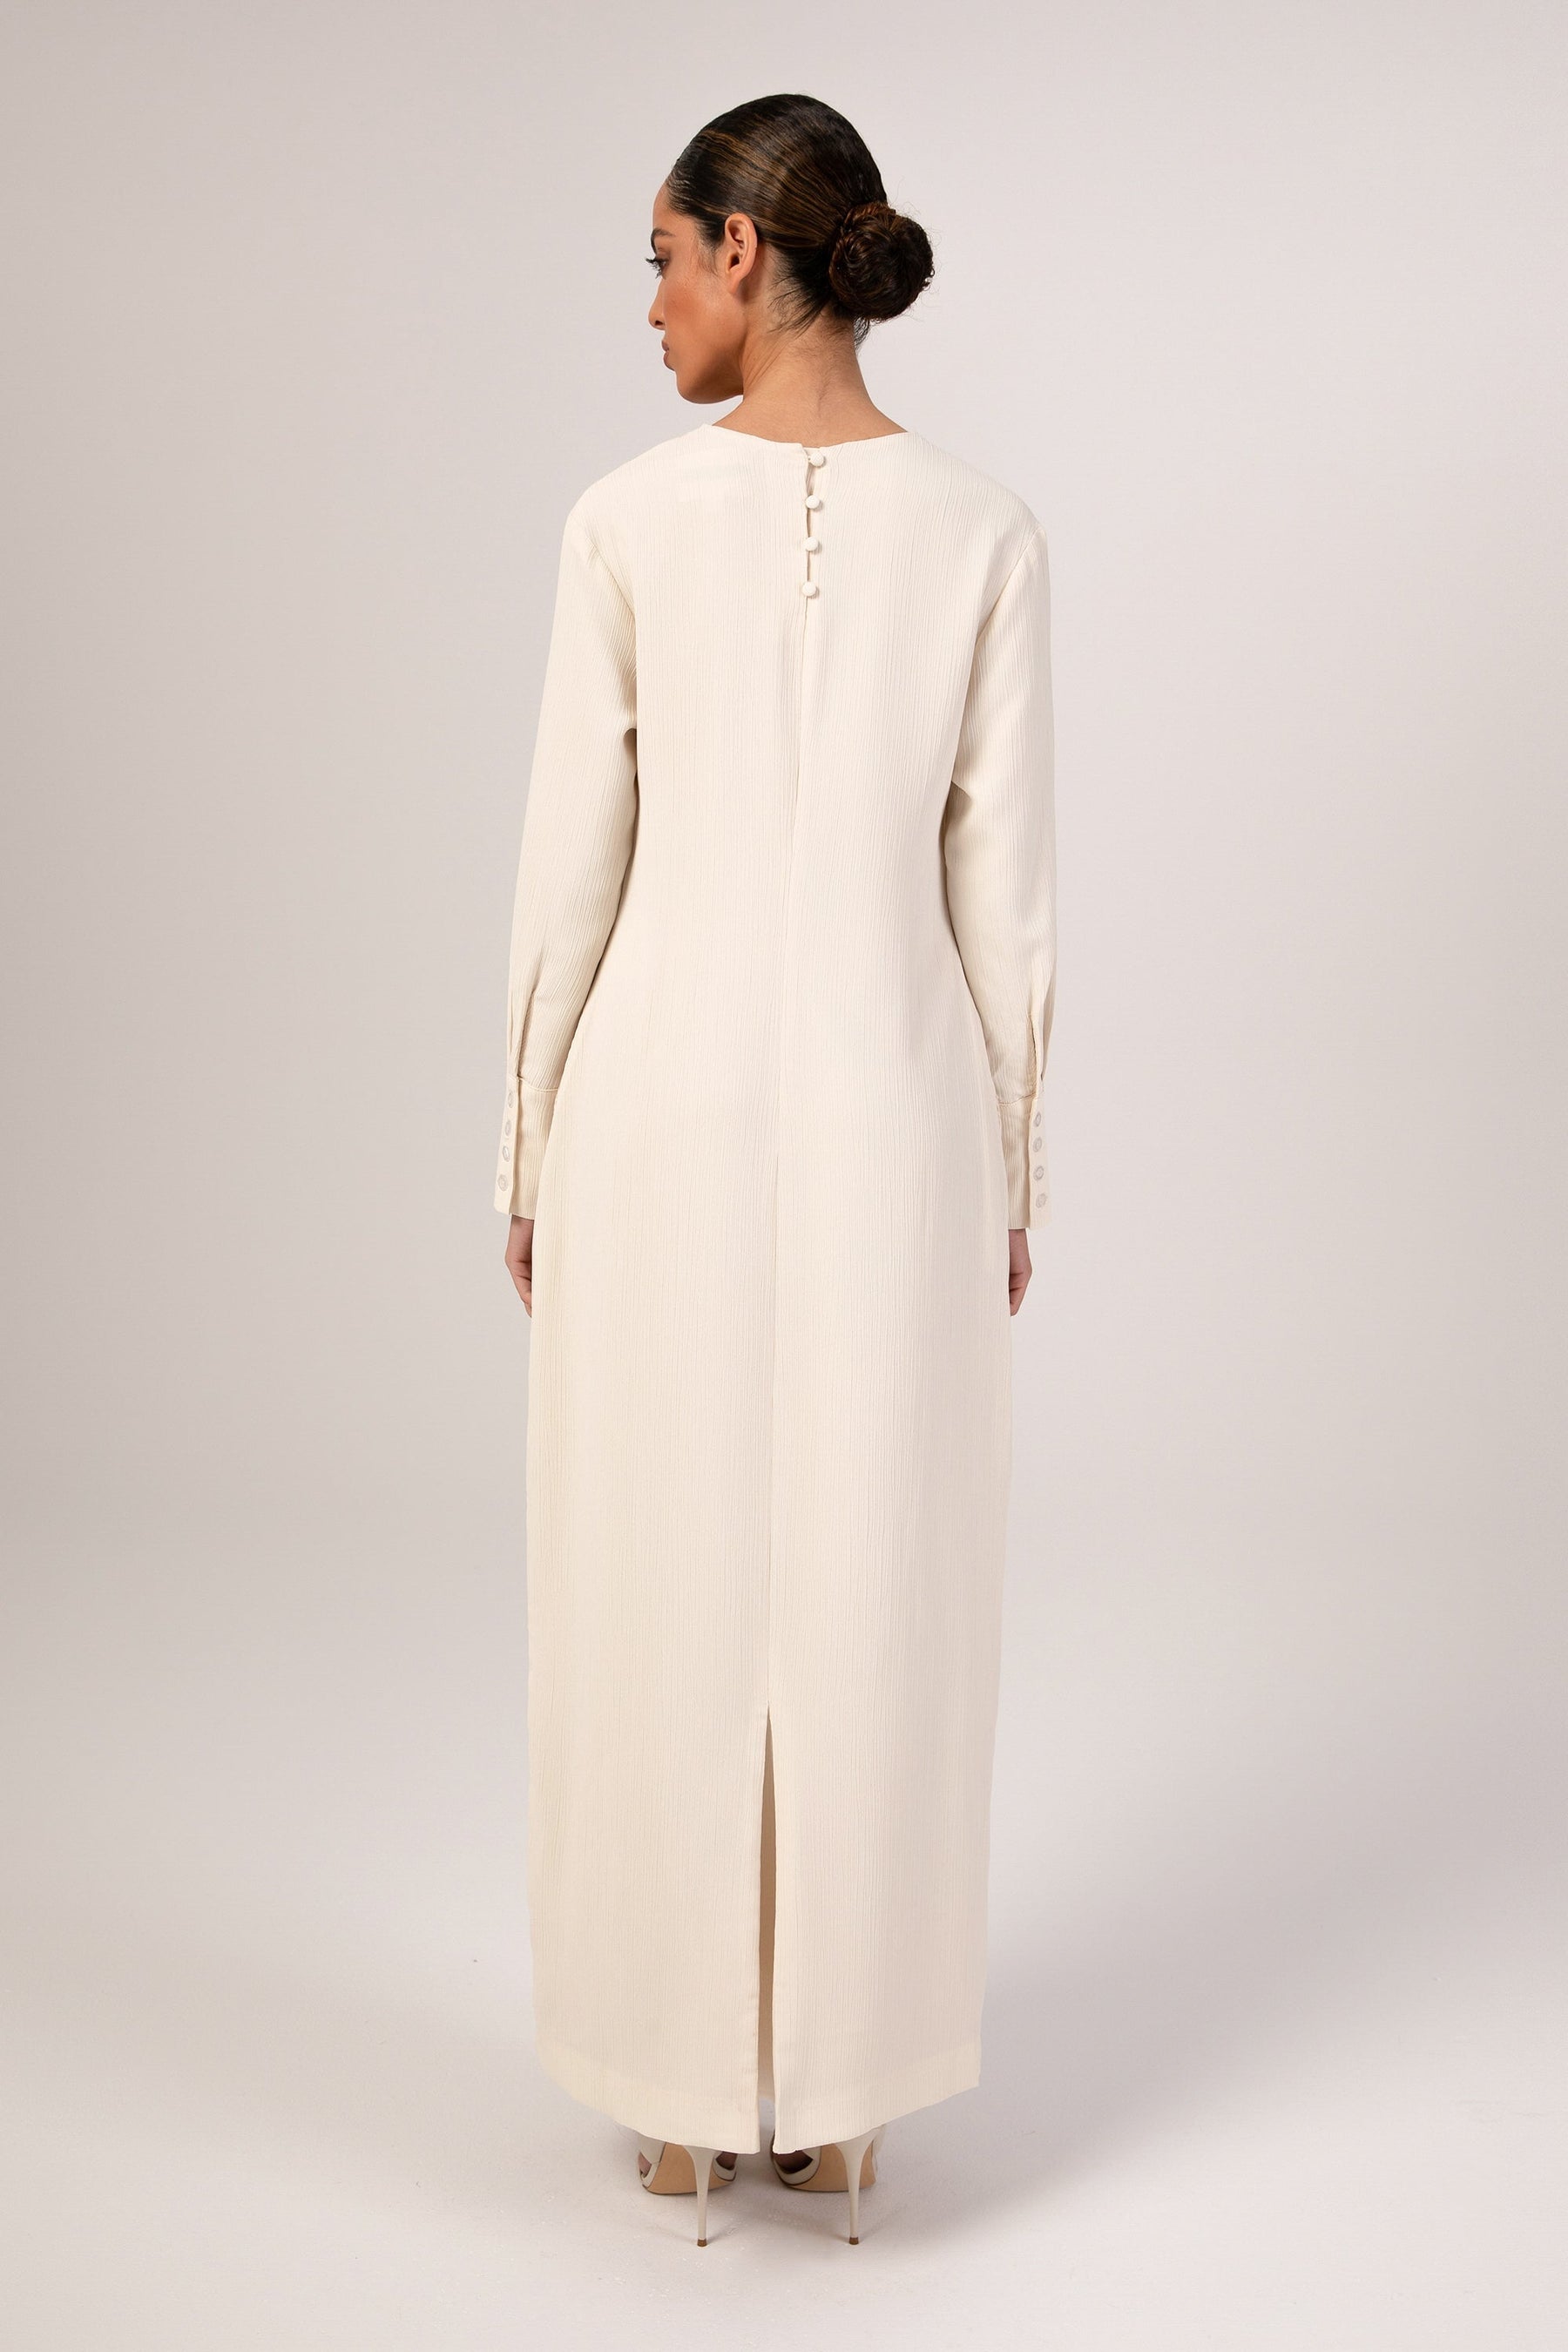 Sajda Textured Maxi Dress - Off White Veiled 